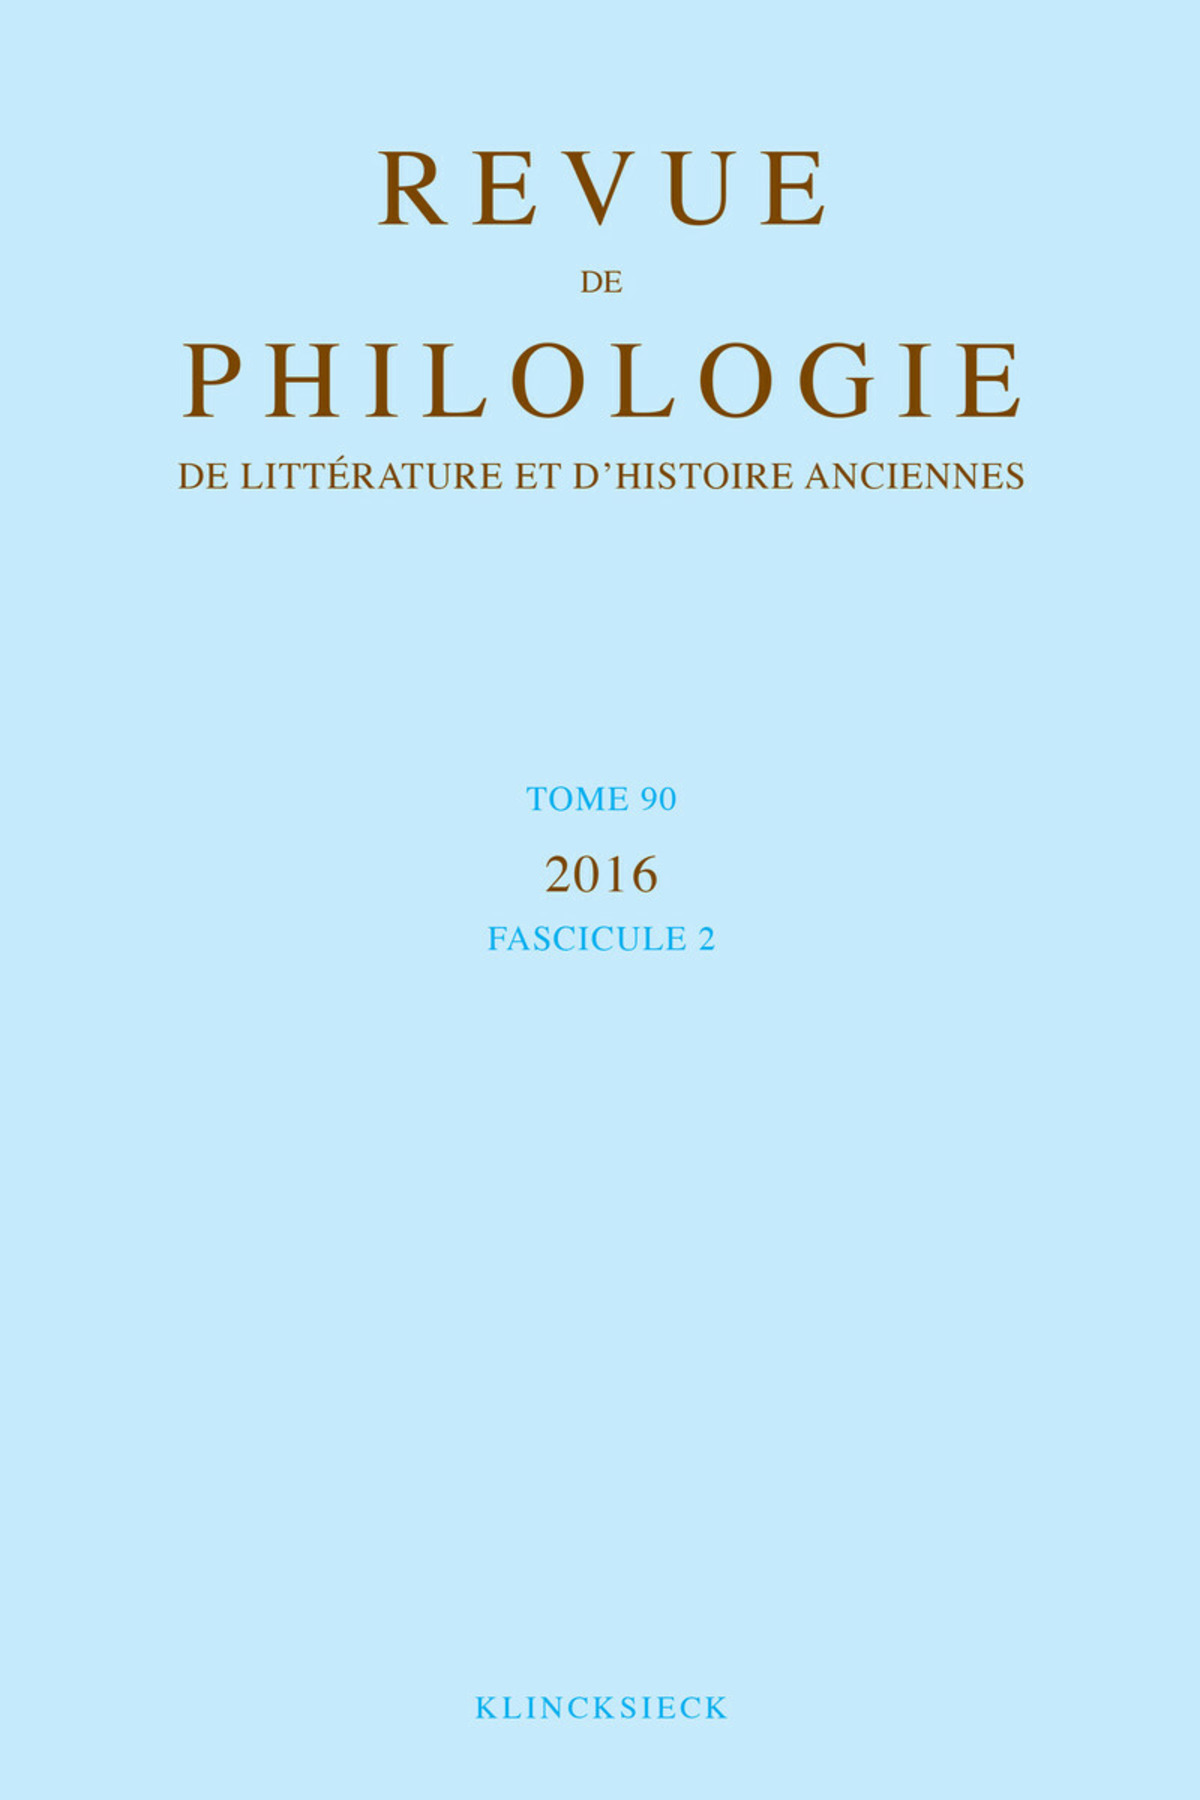 Revue de philologie, de littérature et d'histoire anciennes volume 90